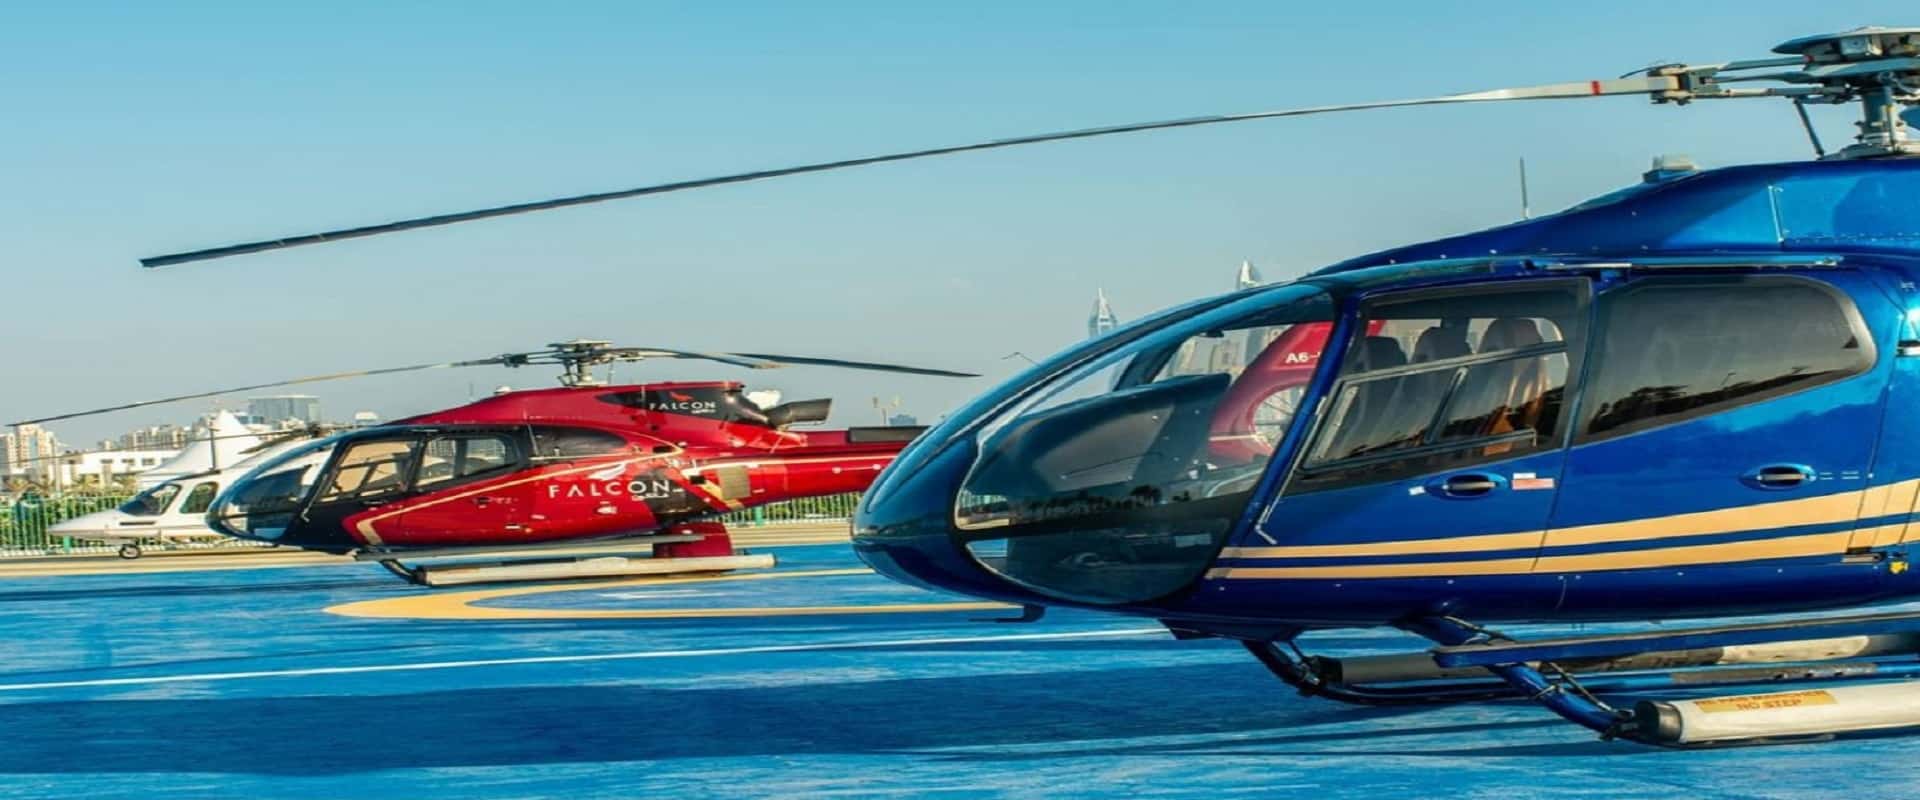 تور هلیکوپتر ابوظبی – بهترین هلیکوپتر سواری در ابوظبی